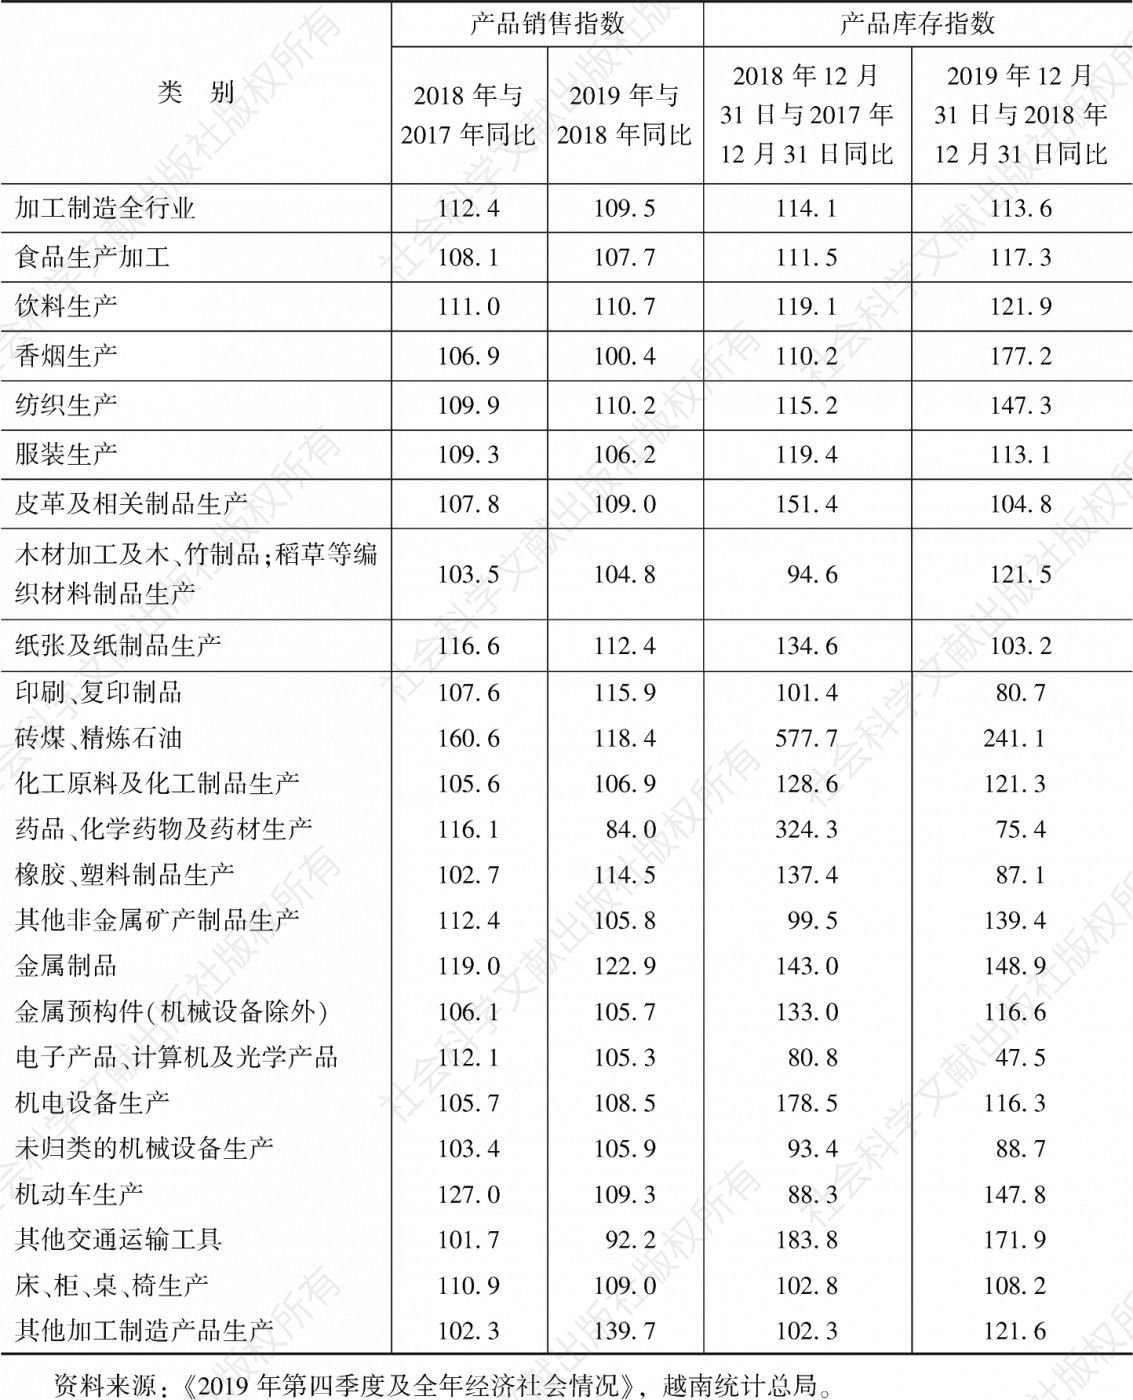 表4 2019年越南工业产品销售、库存指数一览